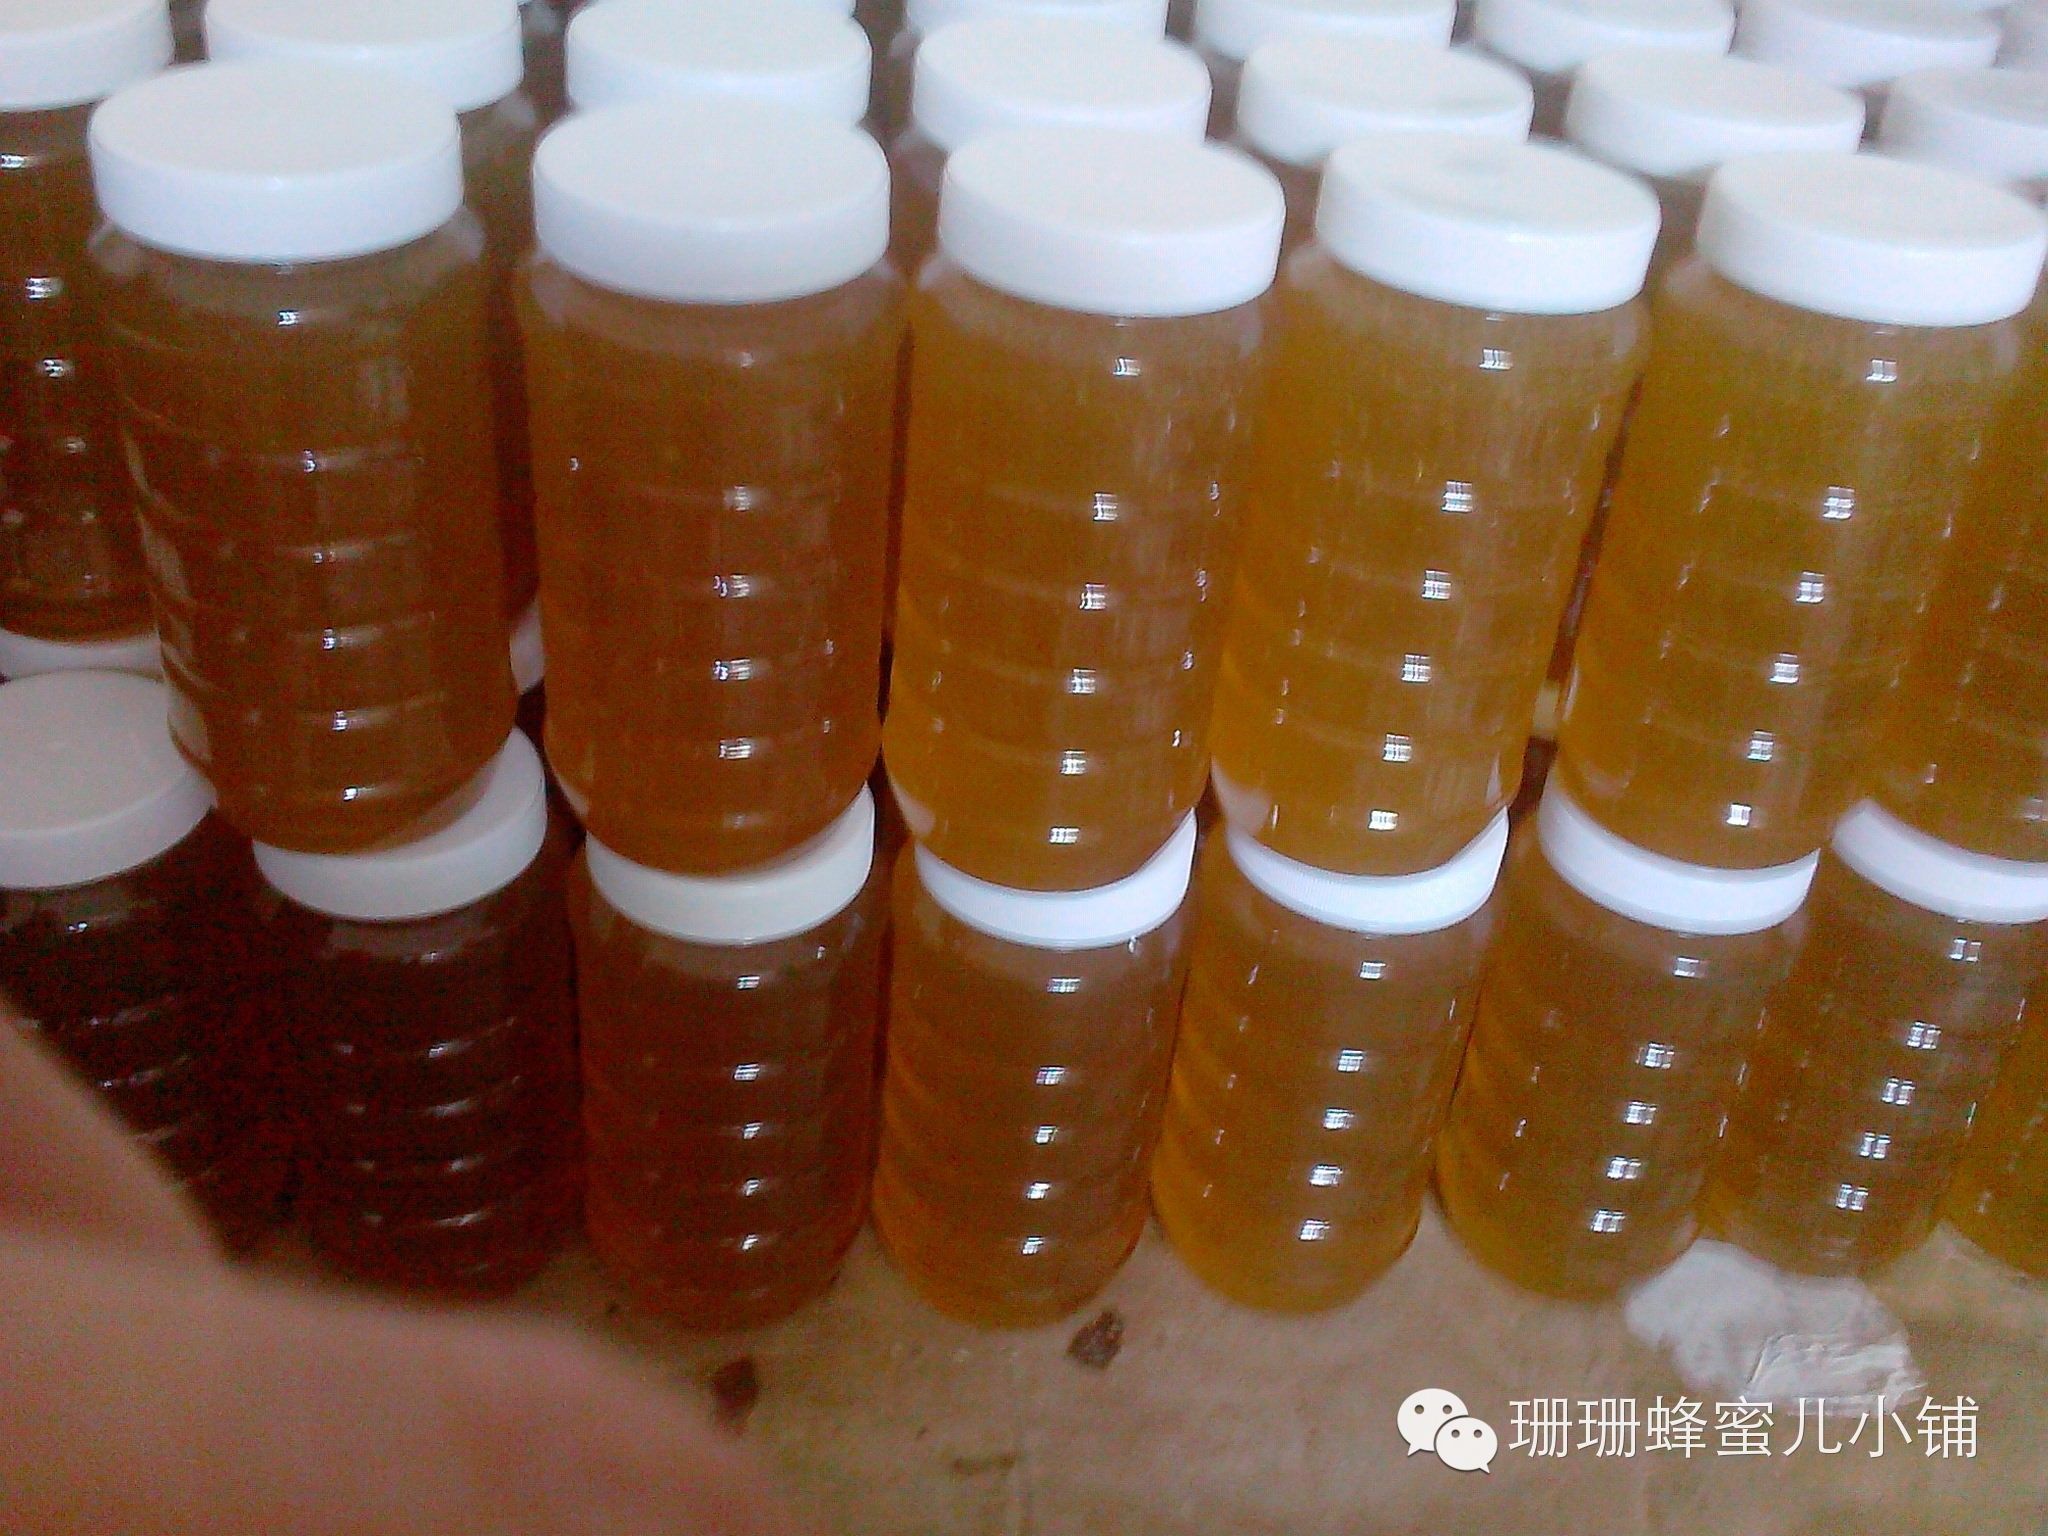 悦诗风吟蜂蜜面膜 蜂蜜肥皂 各种蜂蜜的作用 蜂蜜货源 柠檬蜂蜜水的功效